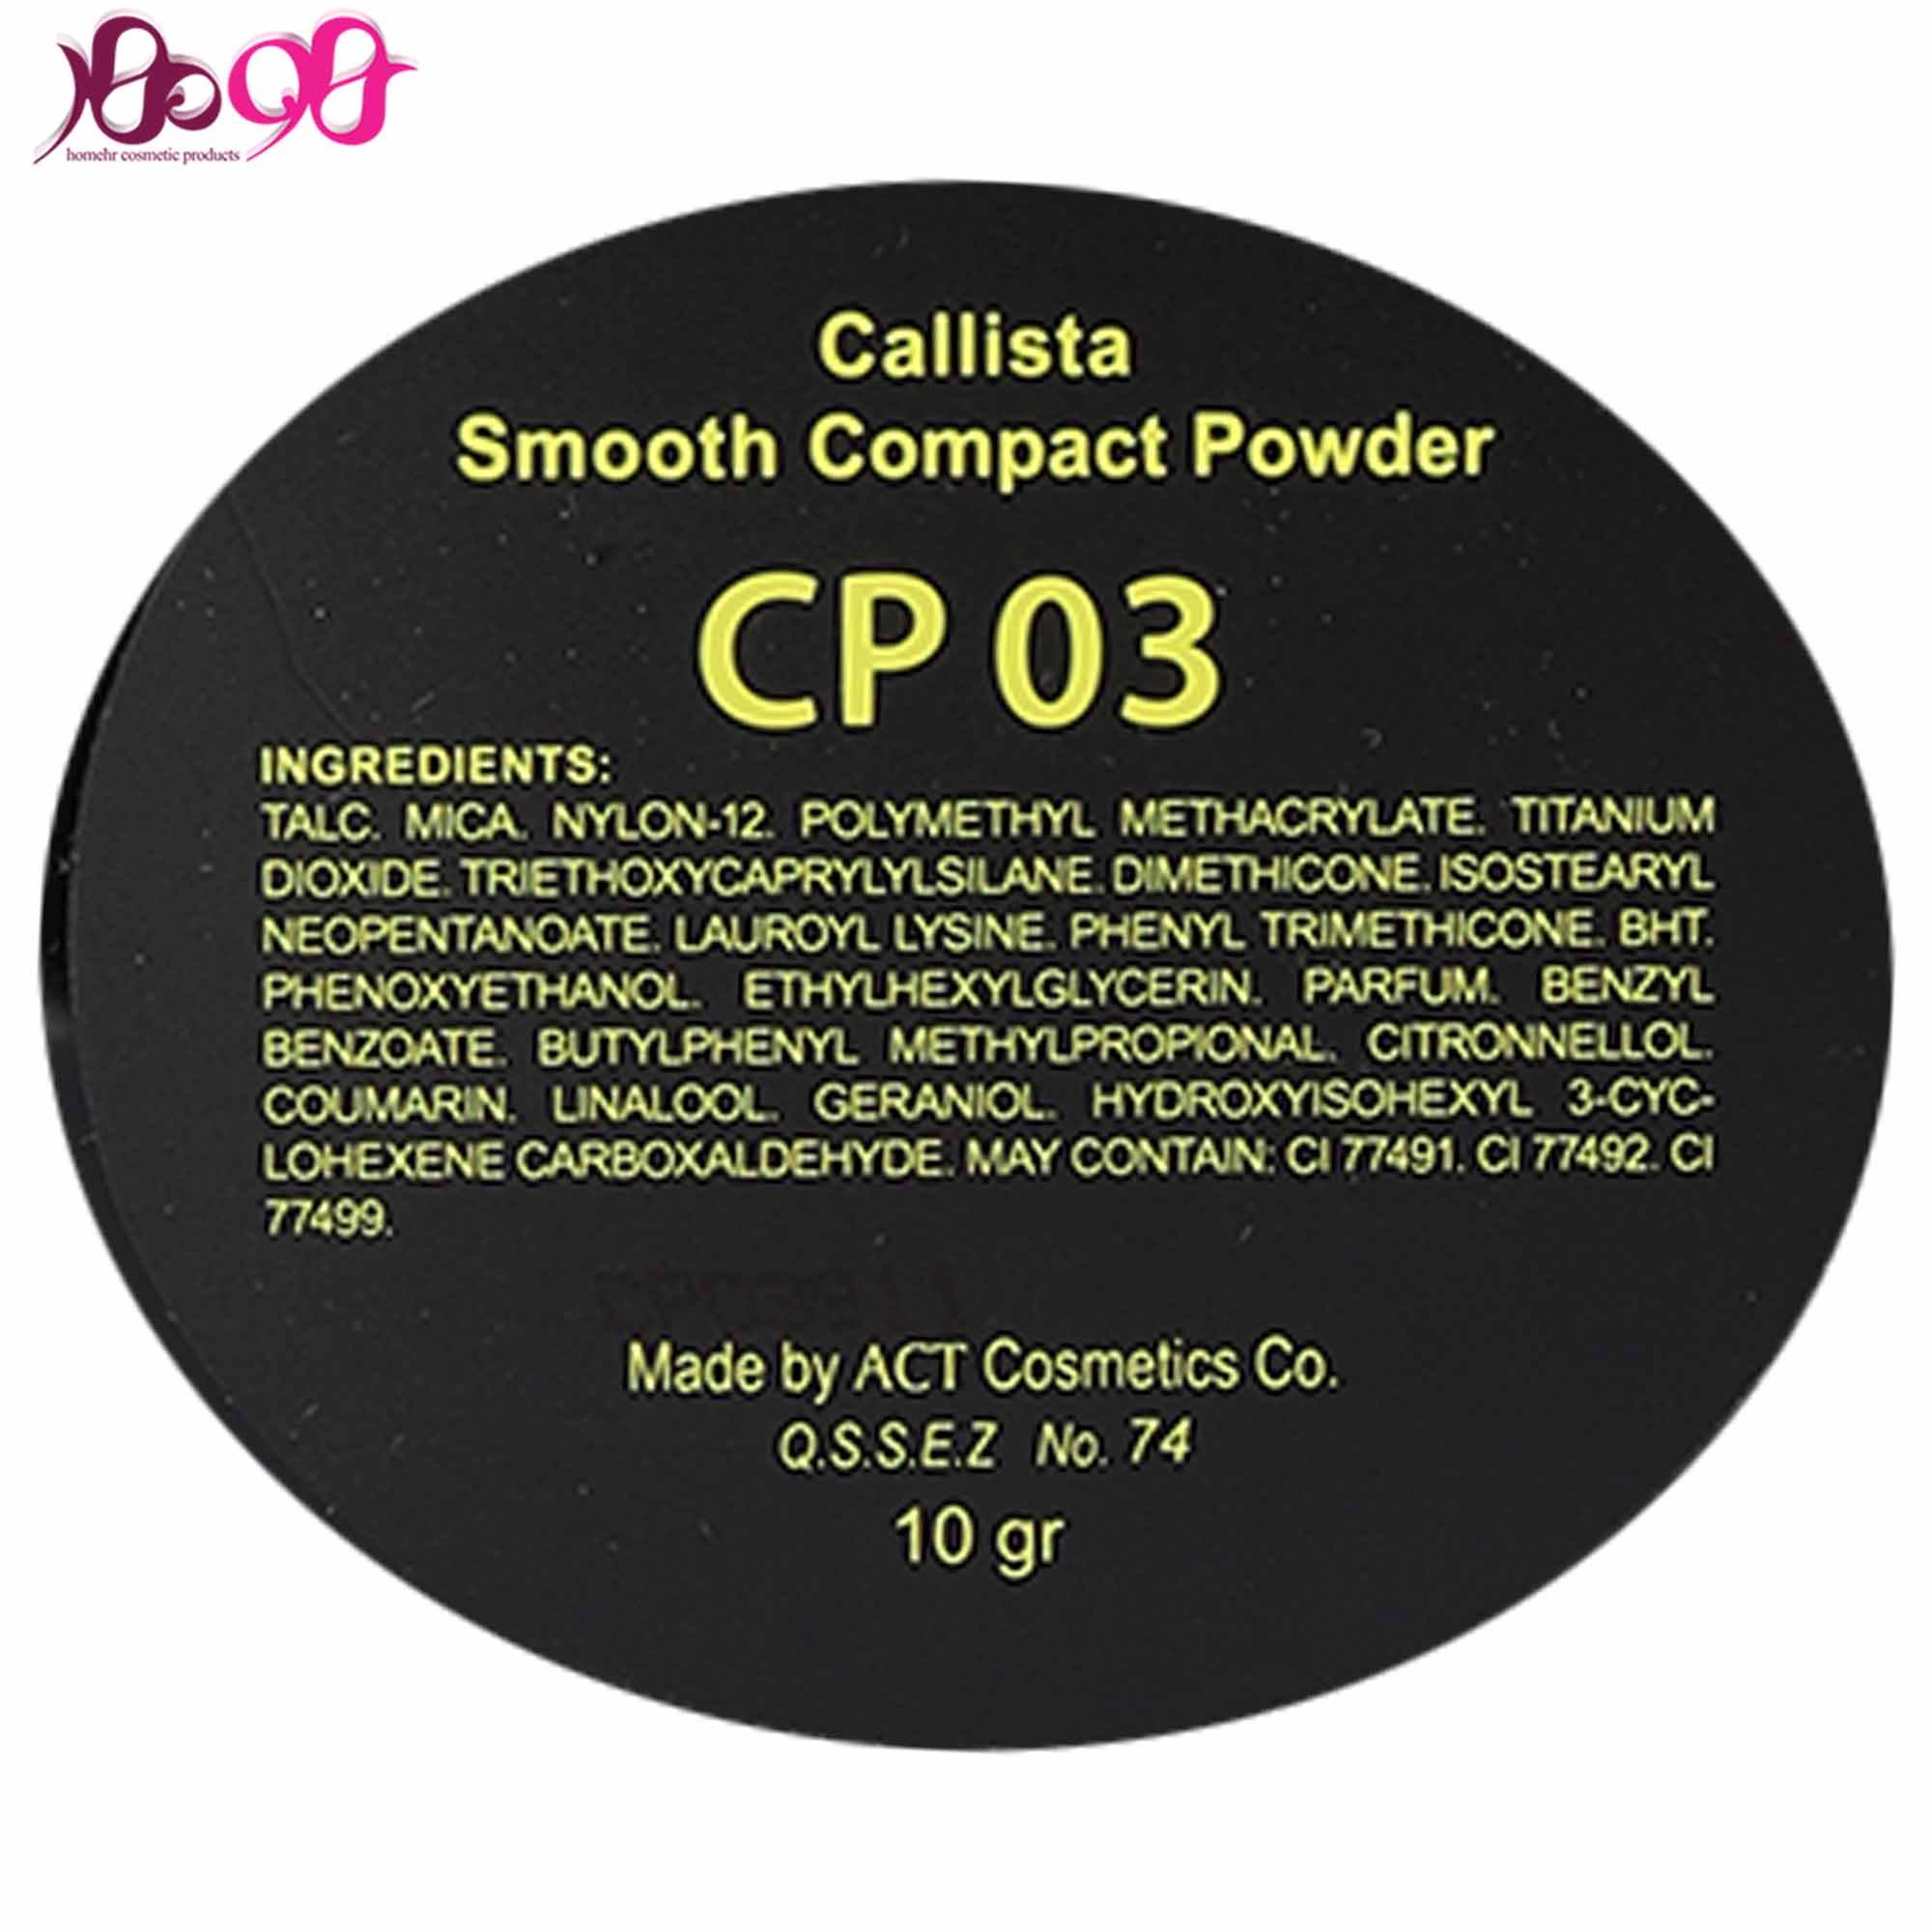 پنکيک-CP03-کاليستا-Callista